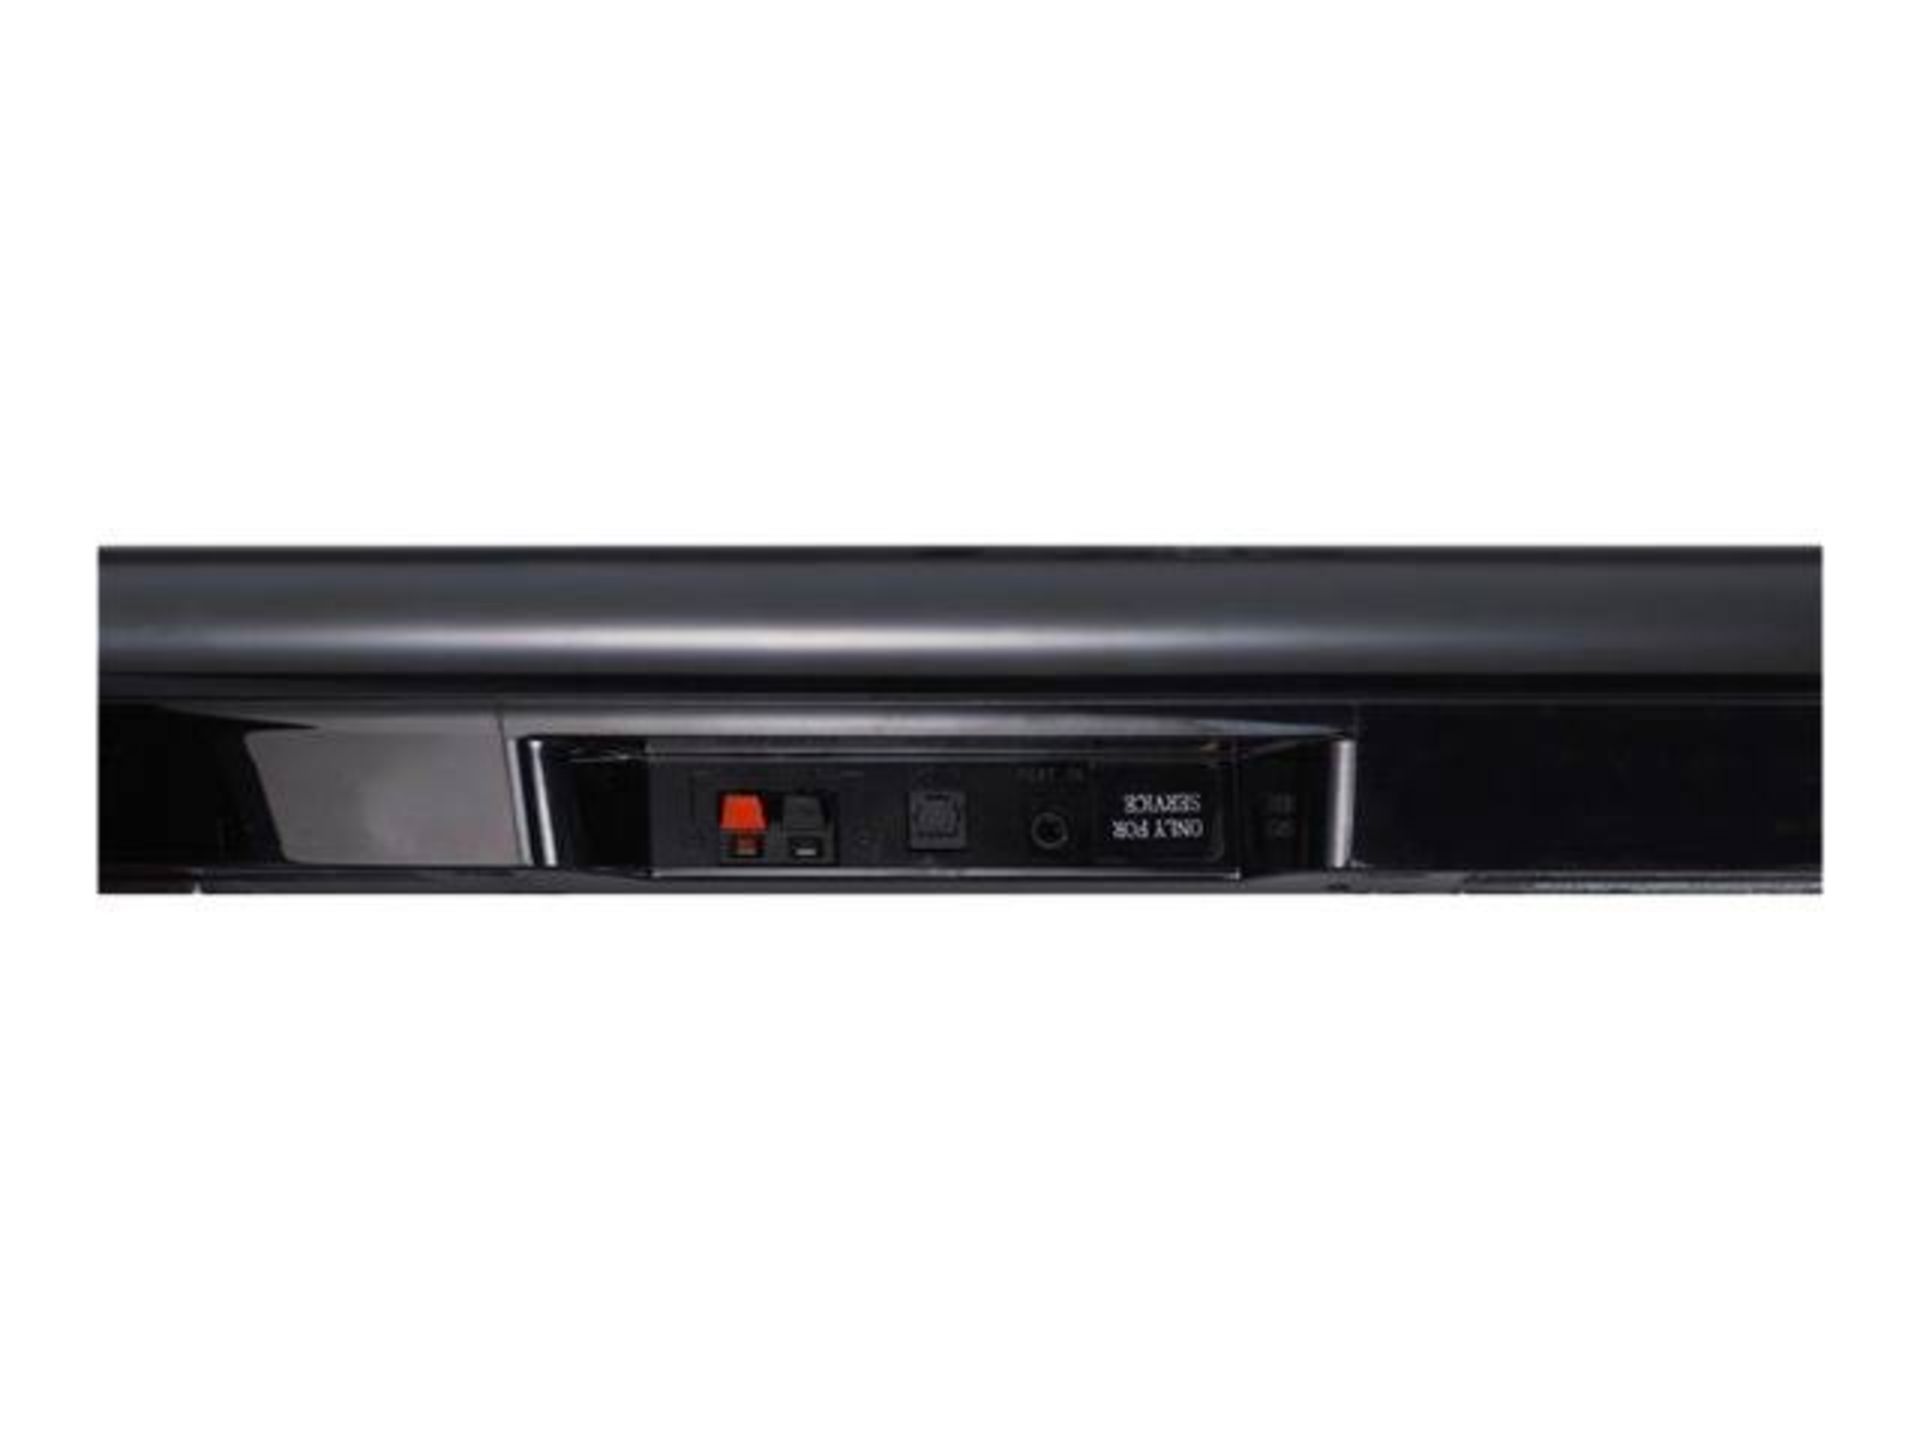 V Grade A NB2540 LG 120W Home Cinema Soundbar System 2.1 With Sub - Image 3 of 5